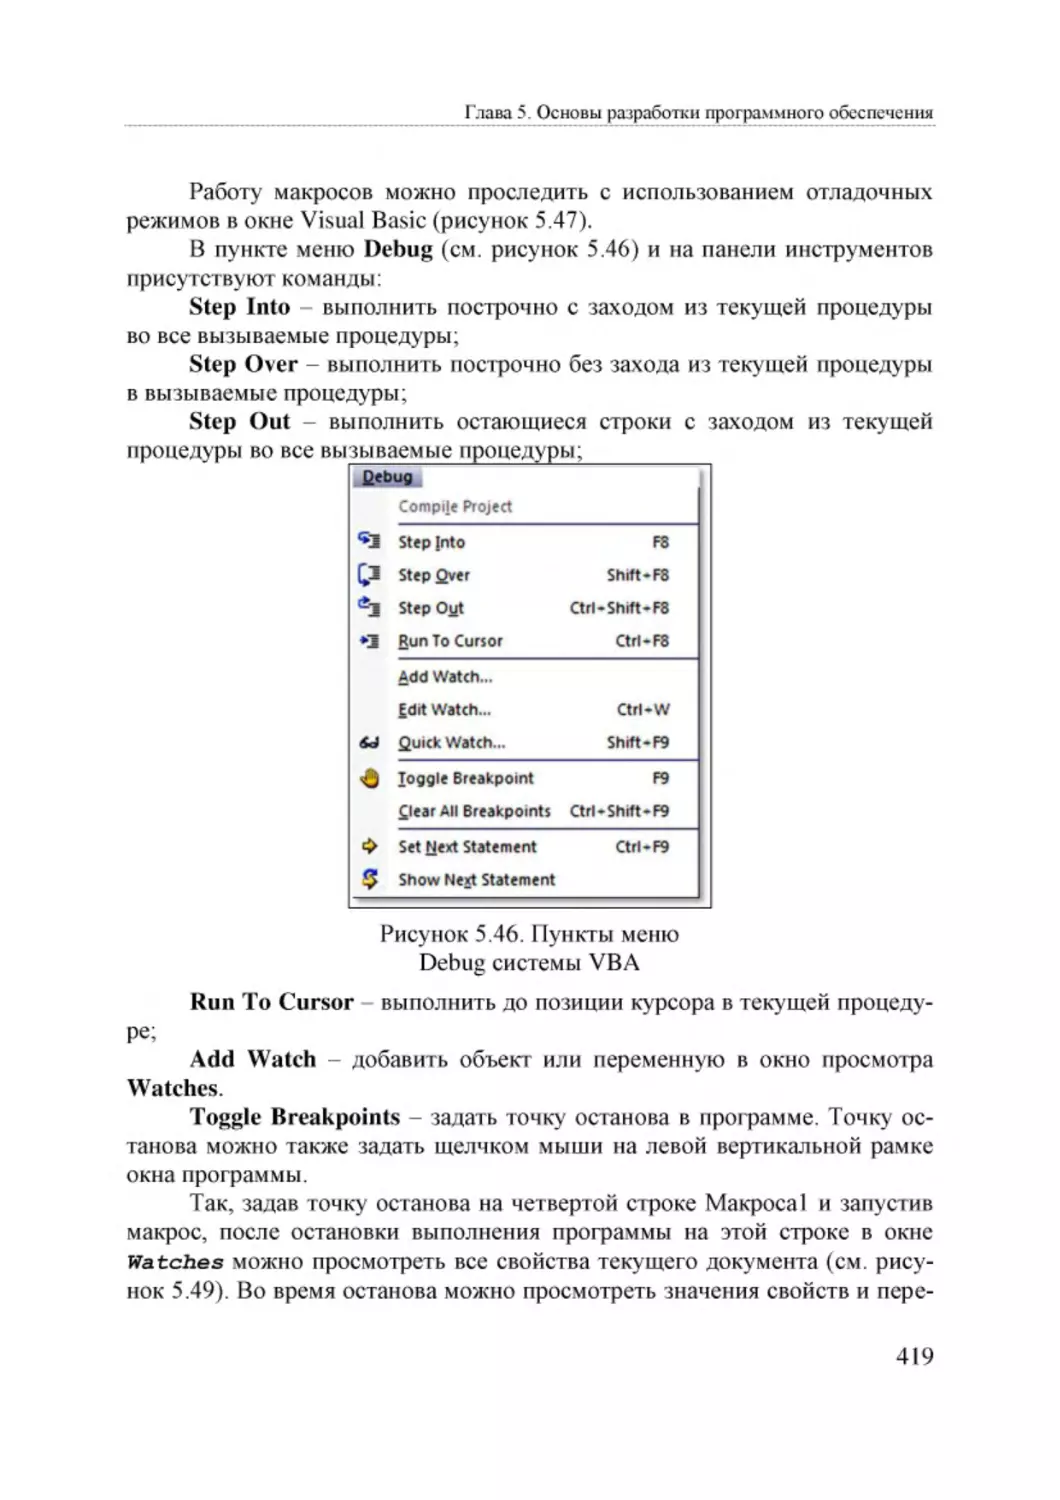 Informatika_Uchebnik_dlya_vuzov_2010 419